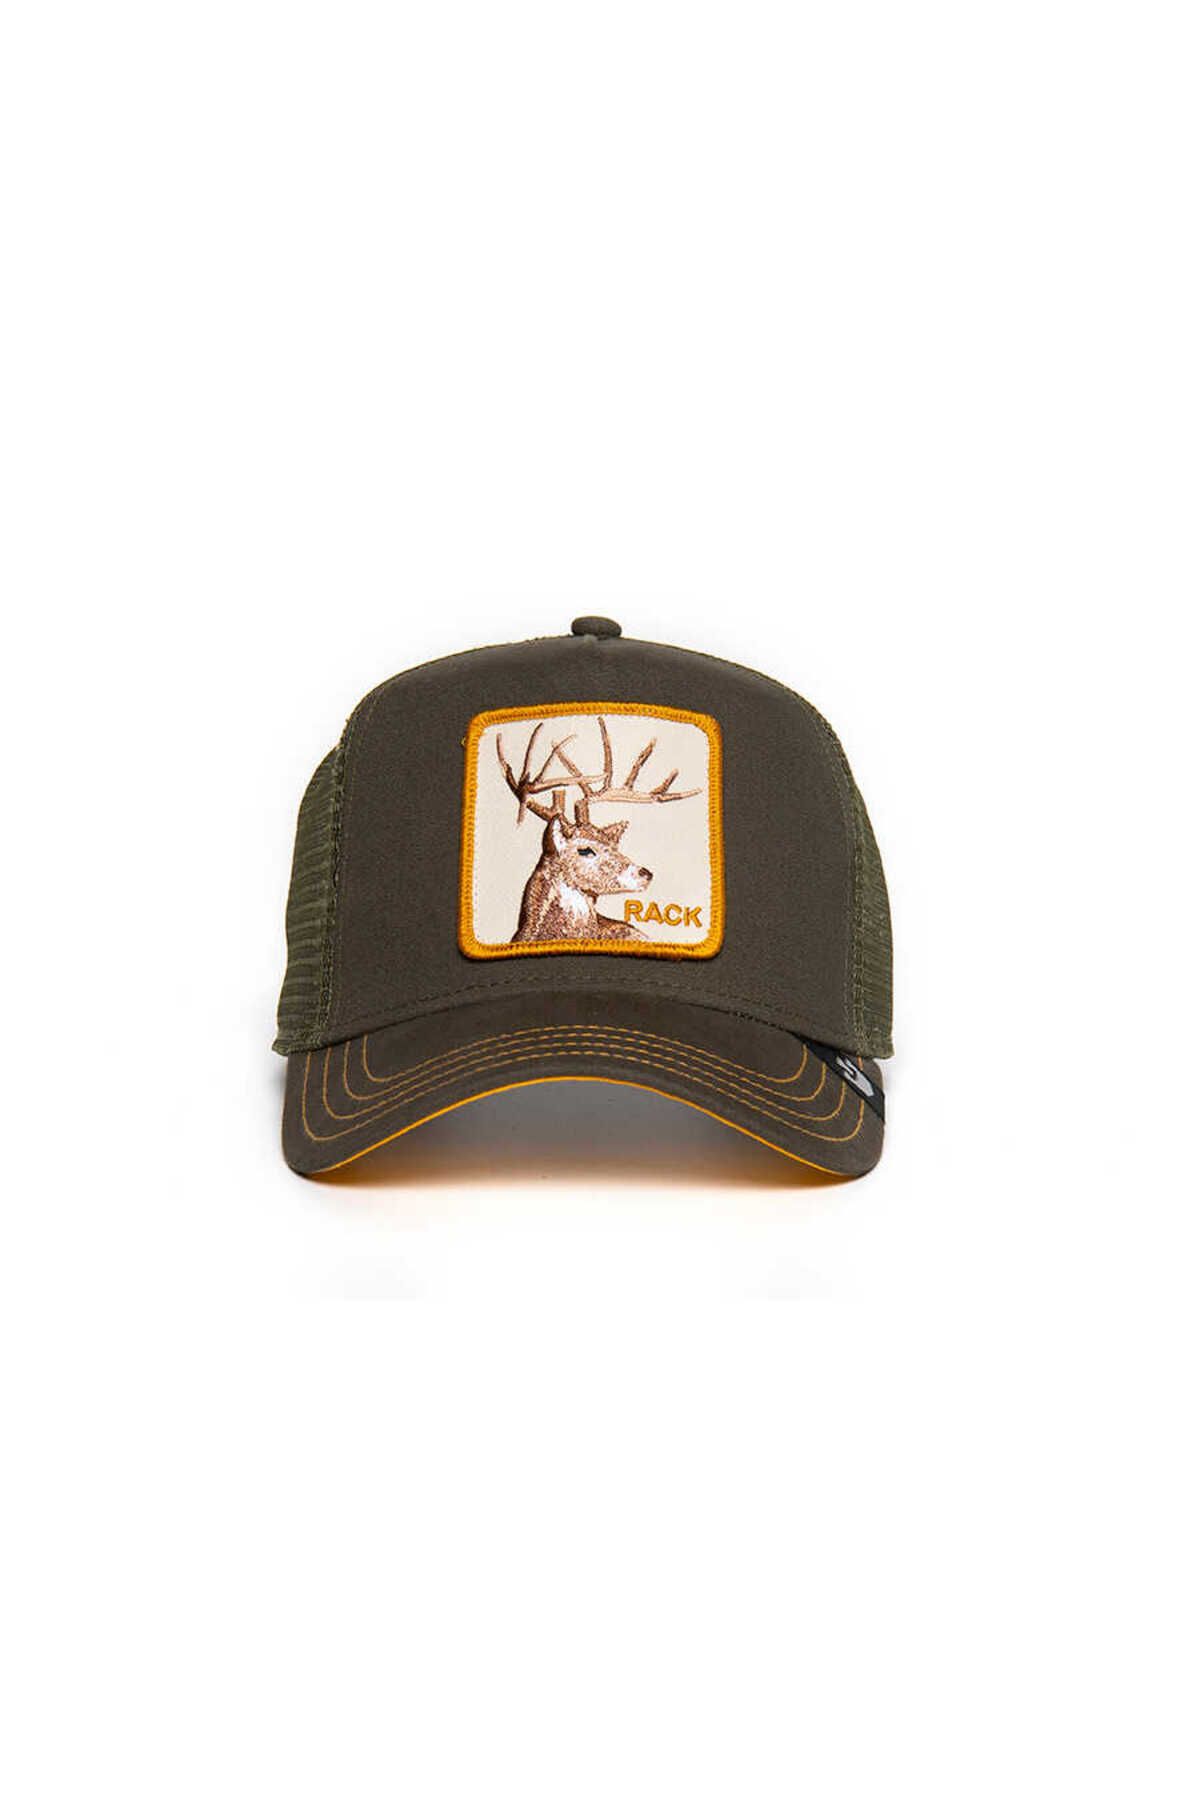 Goorin Bros The Deer Rack Geyik Figürlü Şapka 101-0398 Turuncu Standart